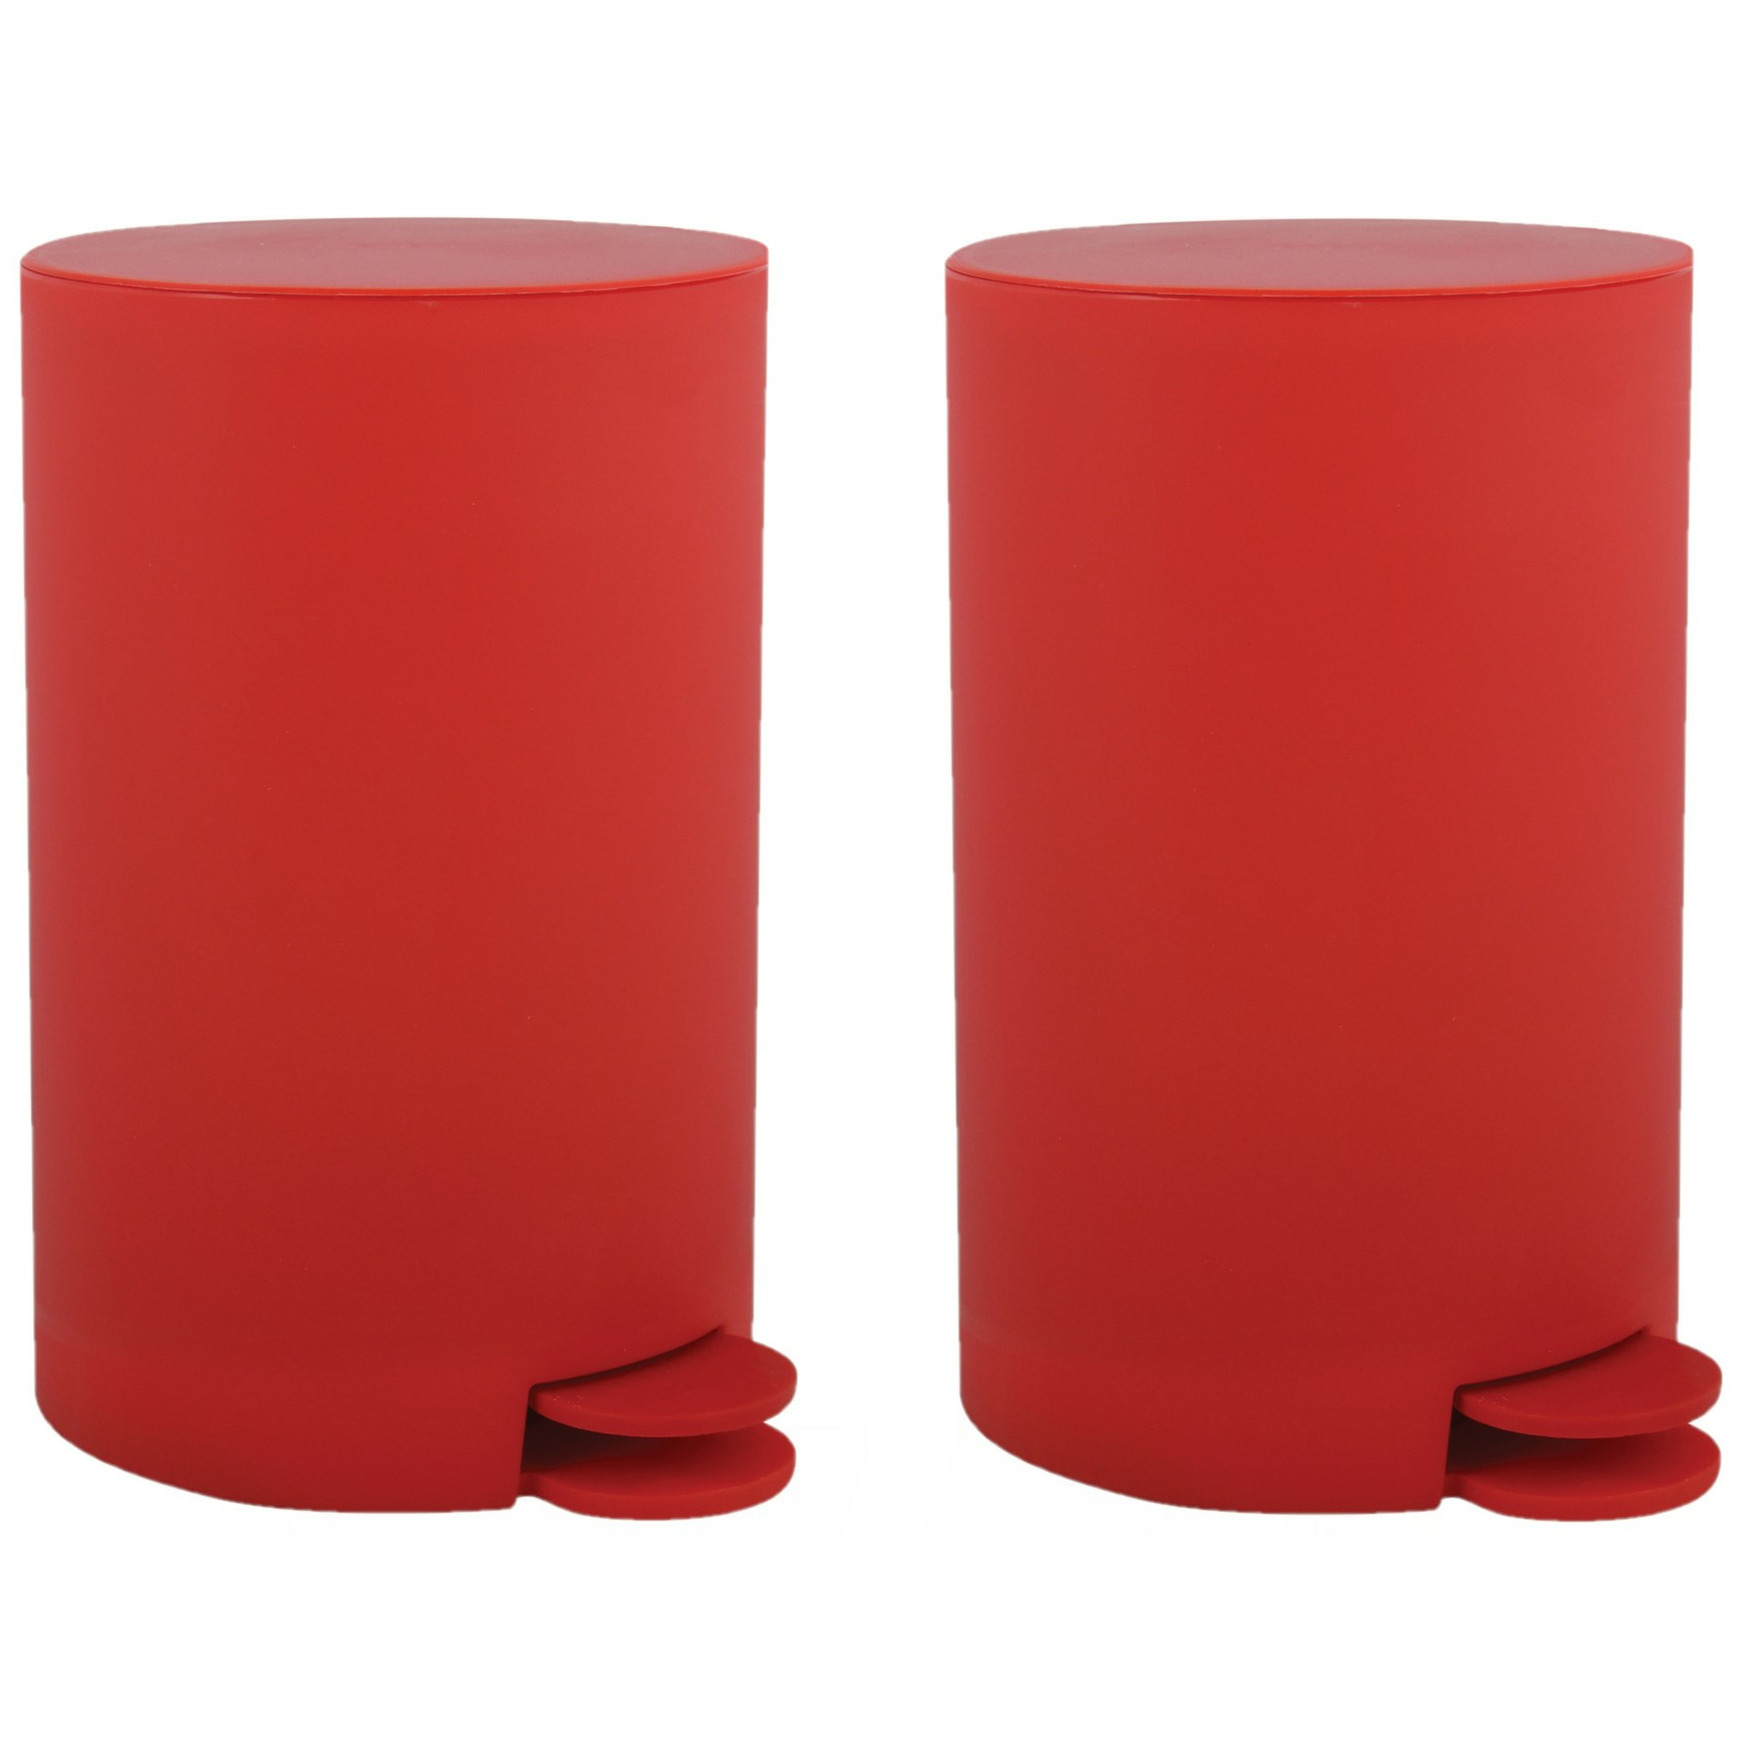 MSV kleine pedaalemmer 2x kunststof rood 3L 15 x 27 cm Badkamer-toilet